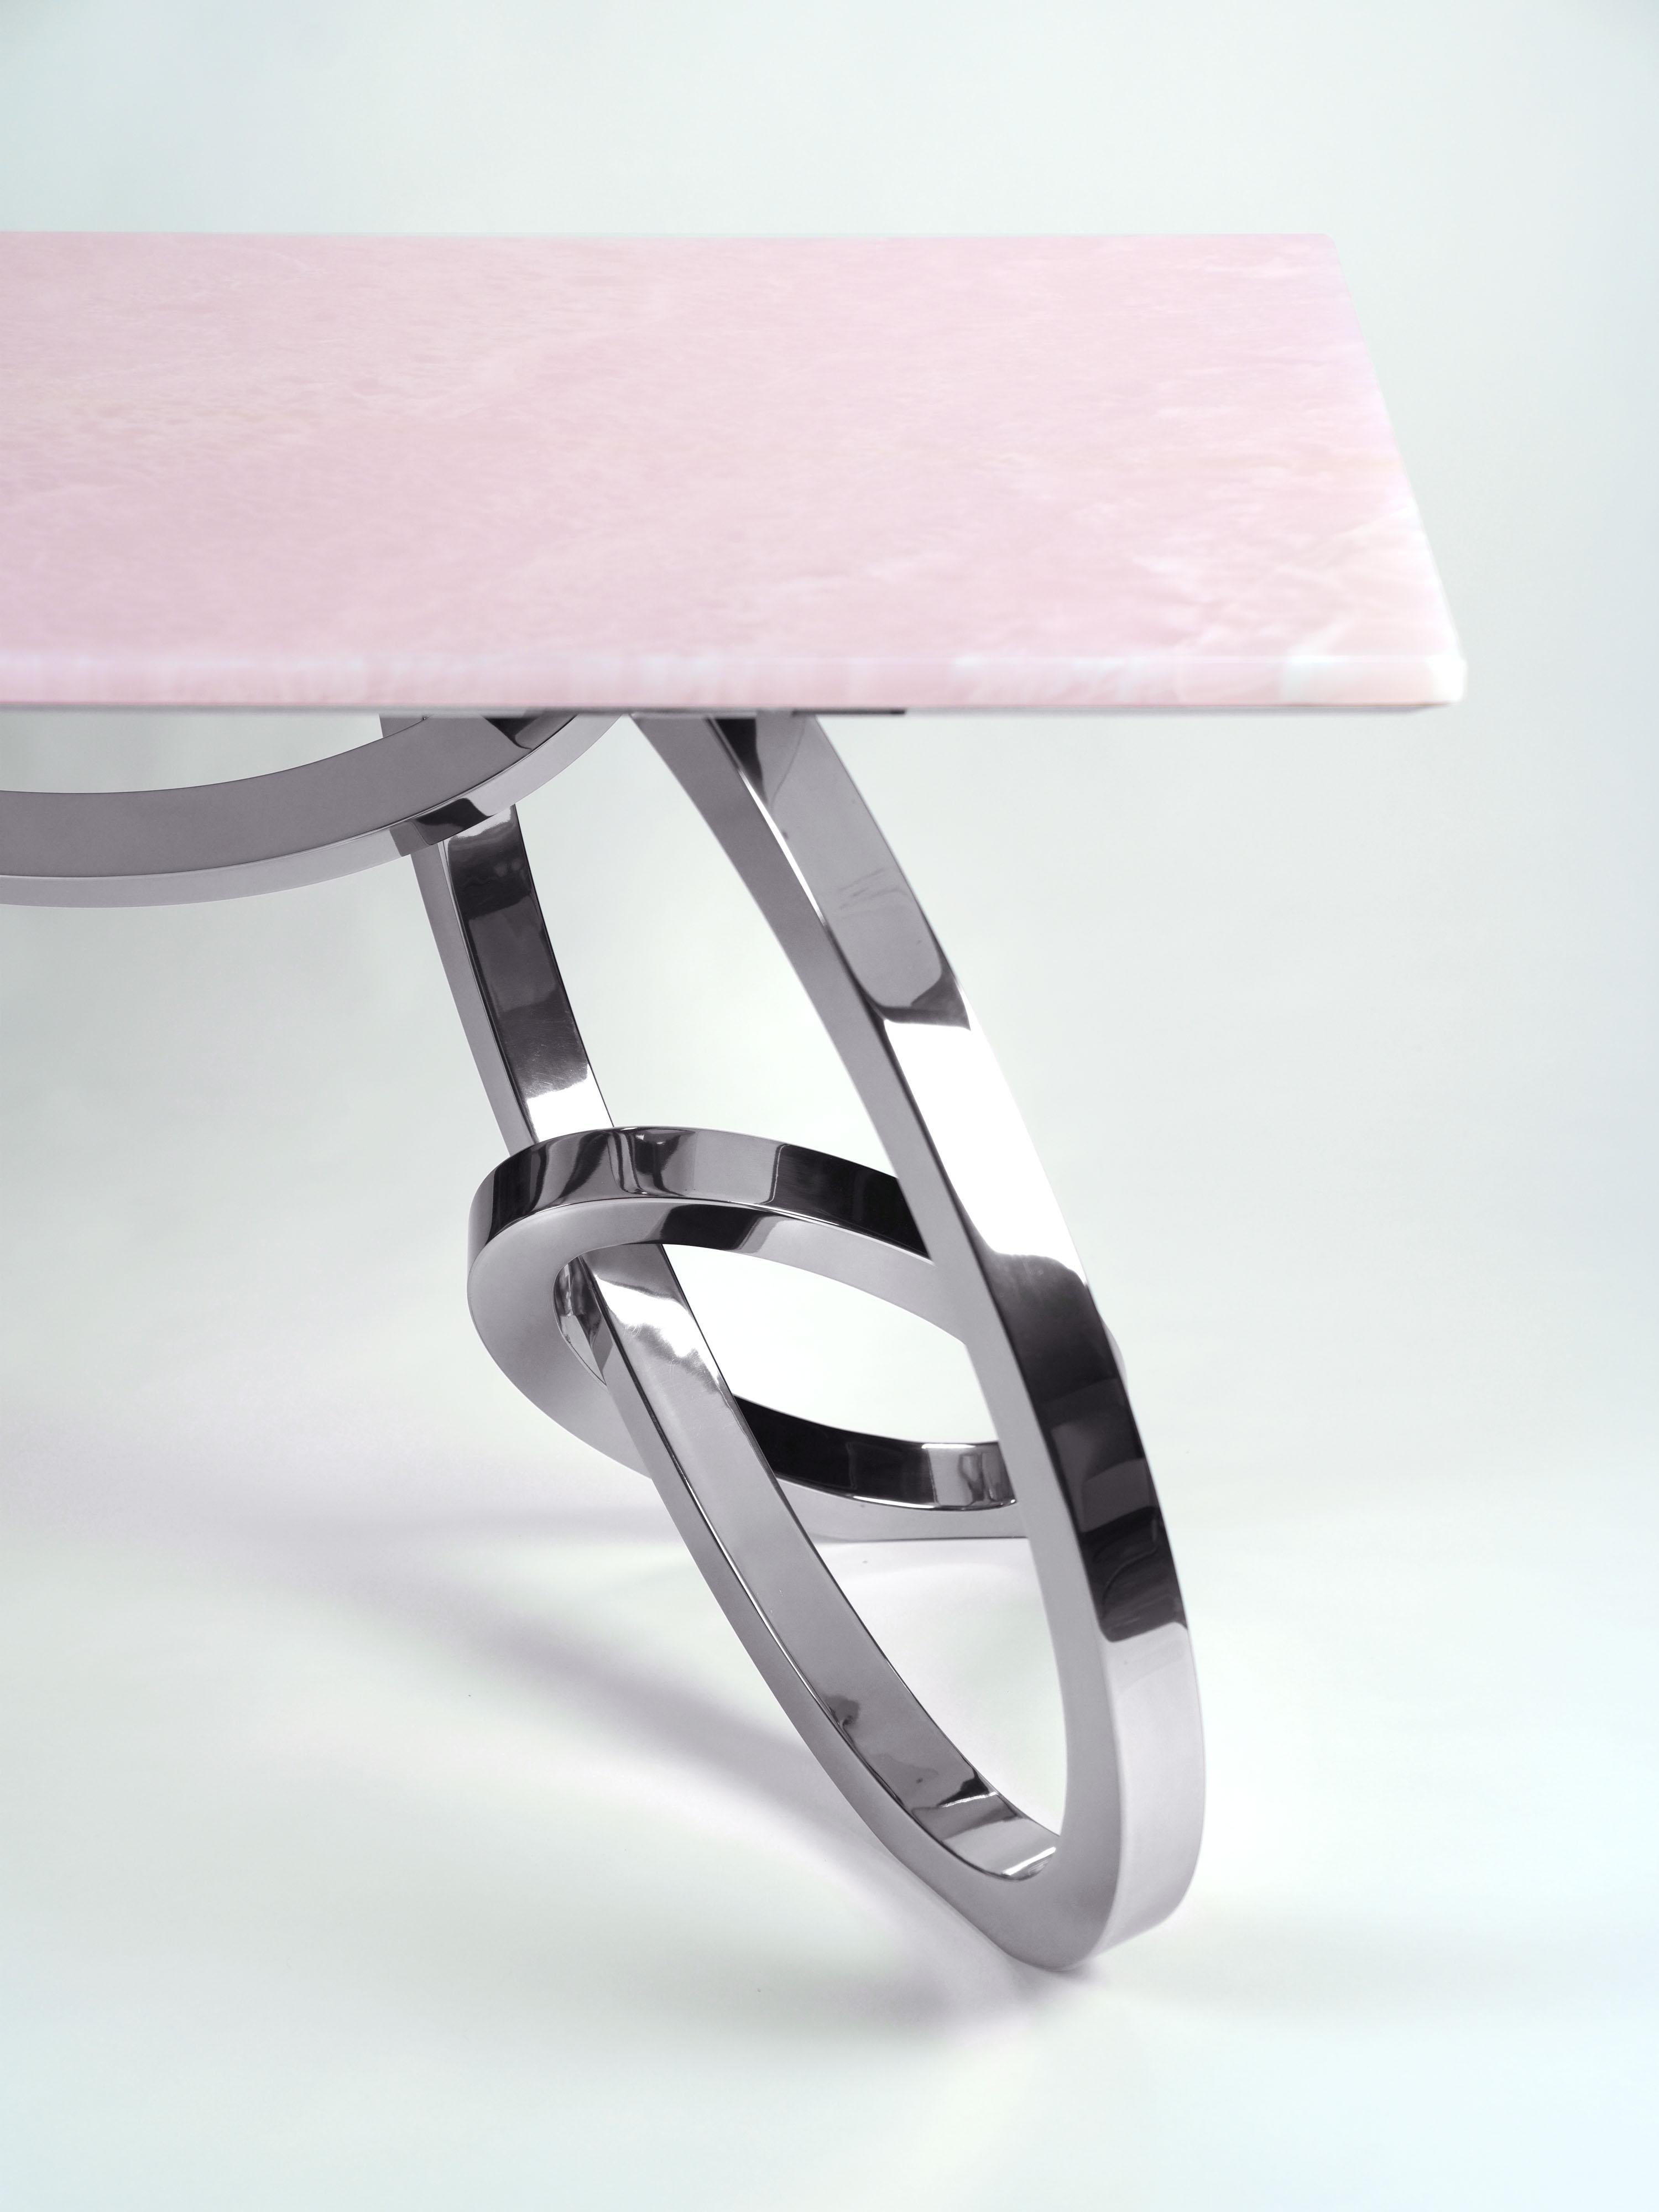 Der 'Bangles Desk' ist ein wichtiger Schreibtisch mit einer Struktur aus hochglanzpoliertem Edelstahl und einer Platte aus seltenem rosa Onyx. Jeder einzelne Armreif wird von Hand geschweißt und hochglanzpoliert. Die spiegelnde Oberfläche des Stahls